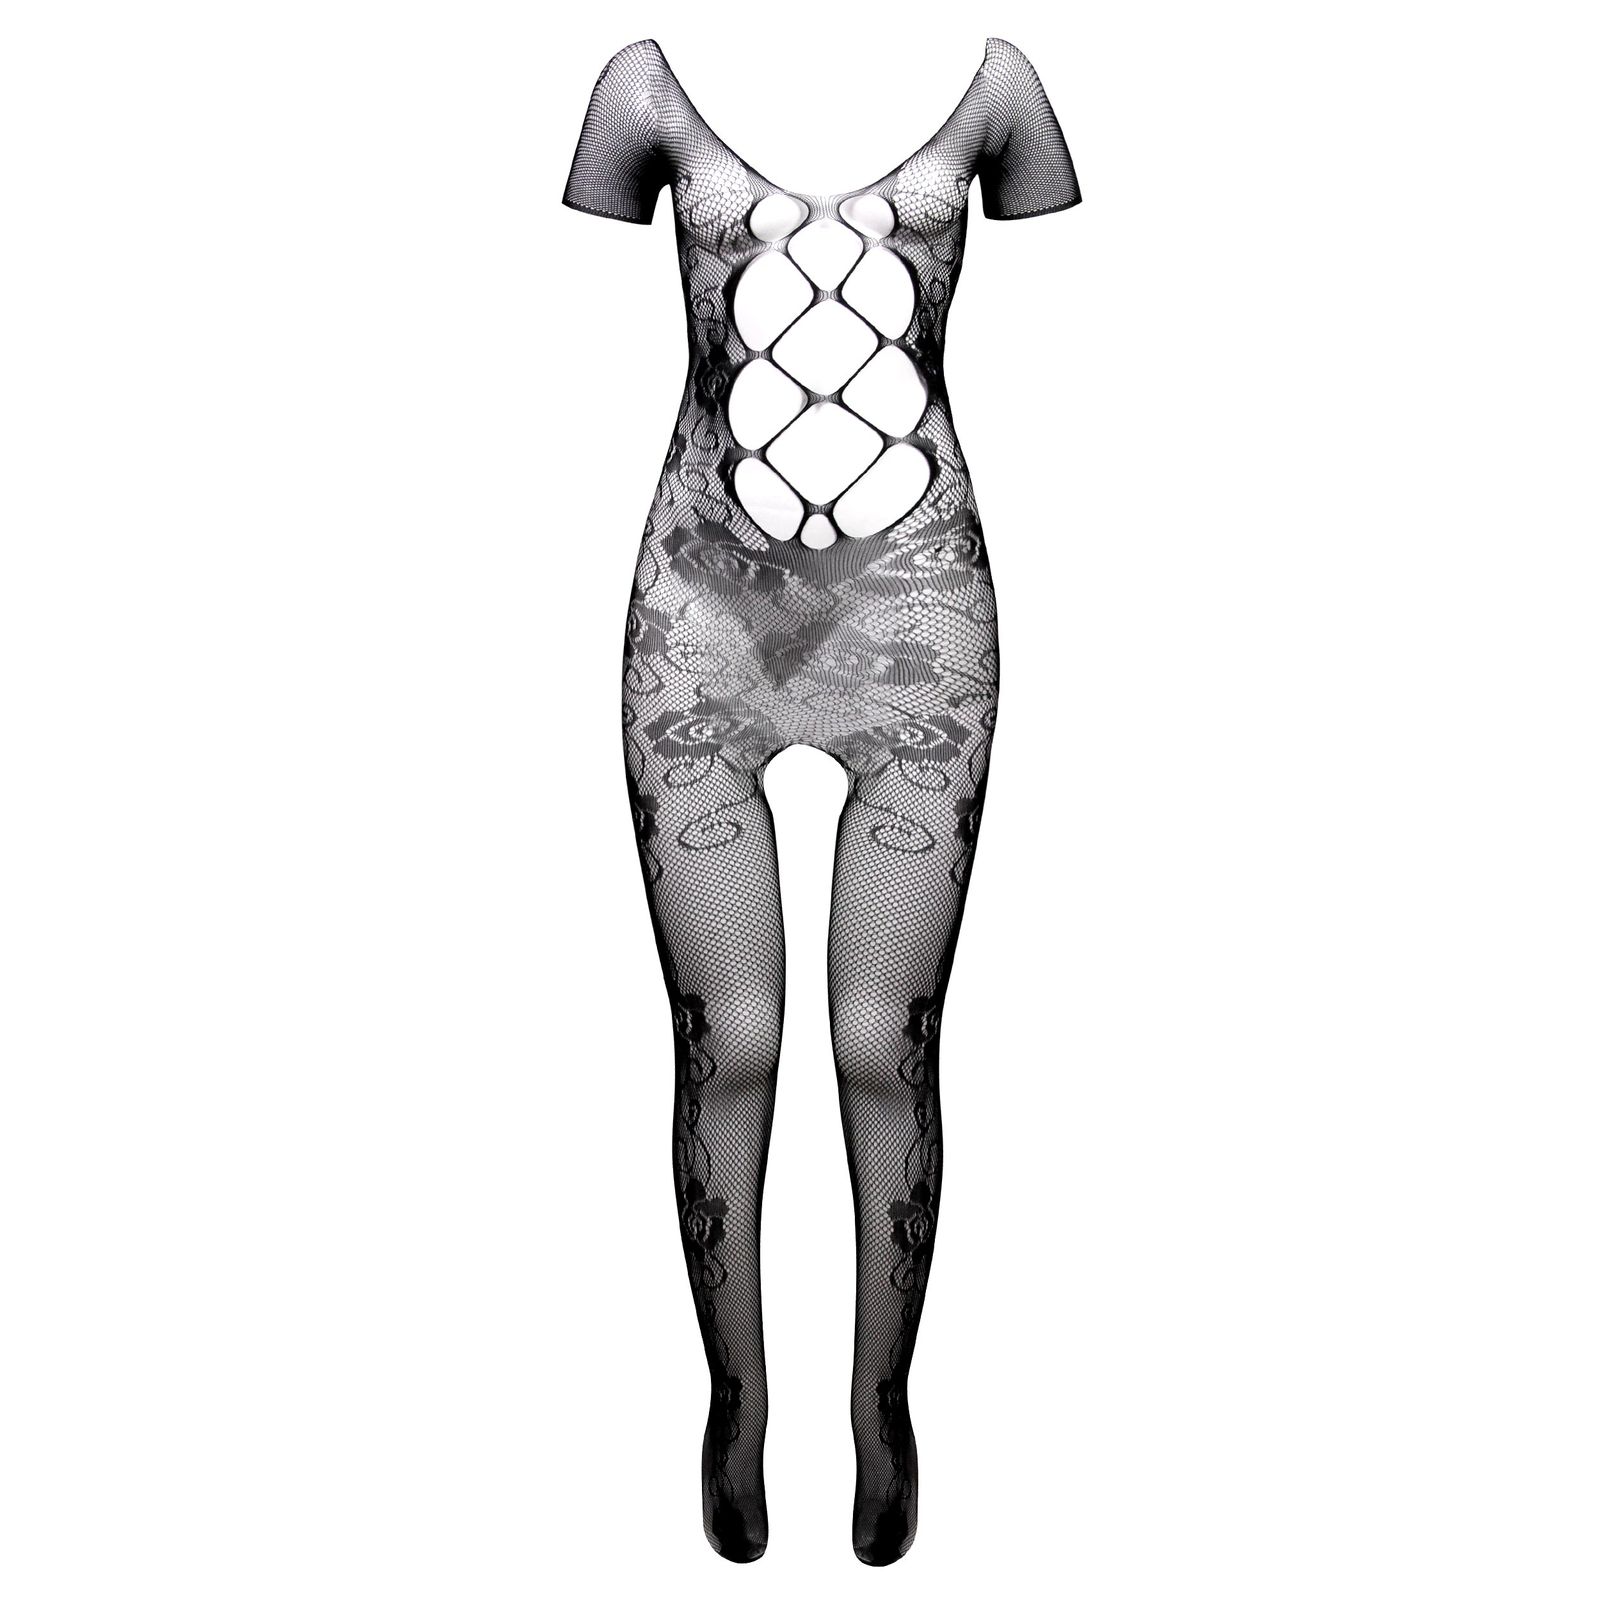 لباس خواب زنانه ماییلدا مدل فانتزی کد 4622-020 رنگ مشکی -  - 1